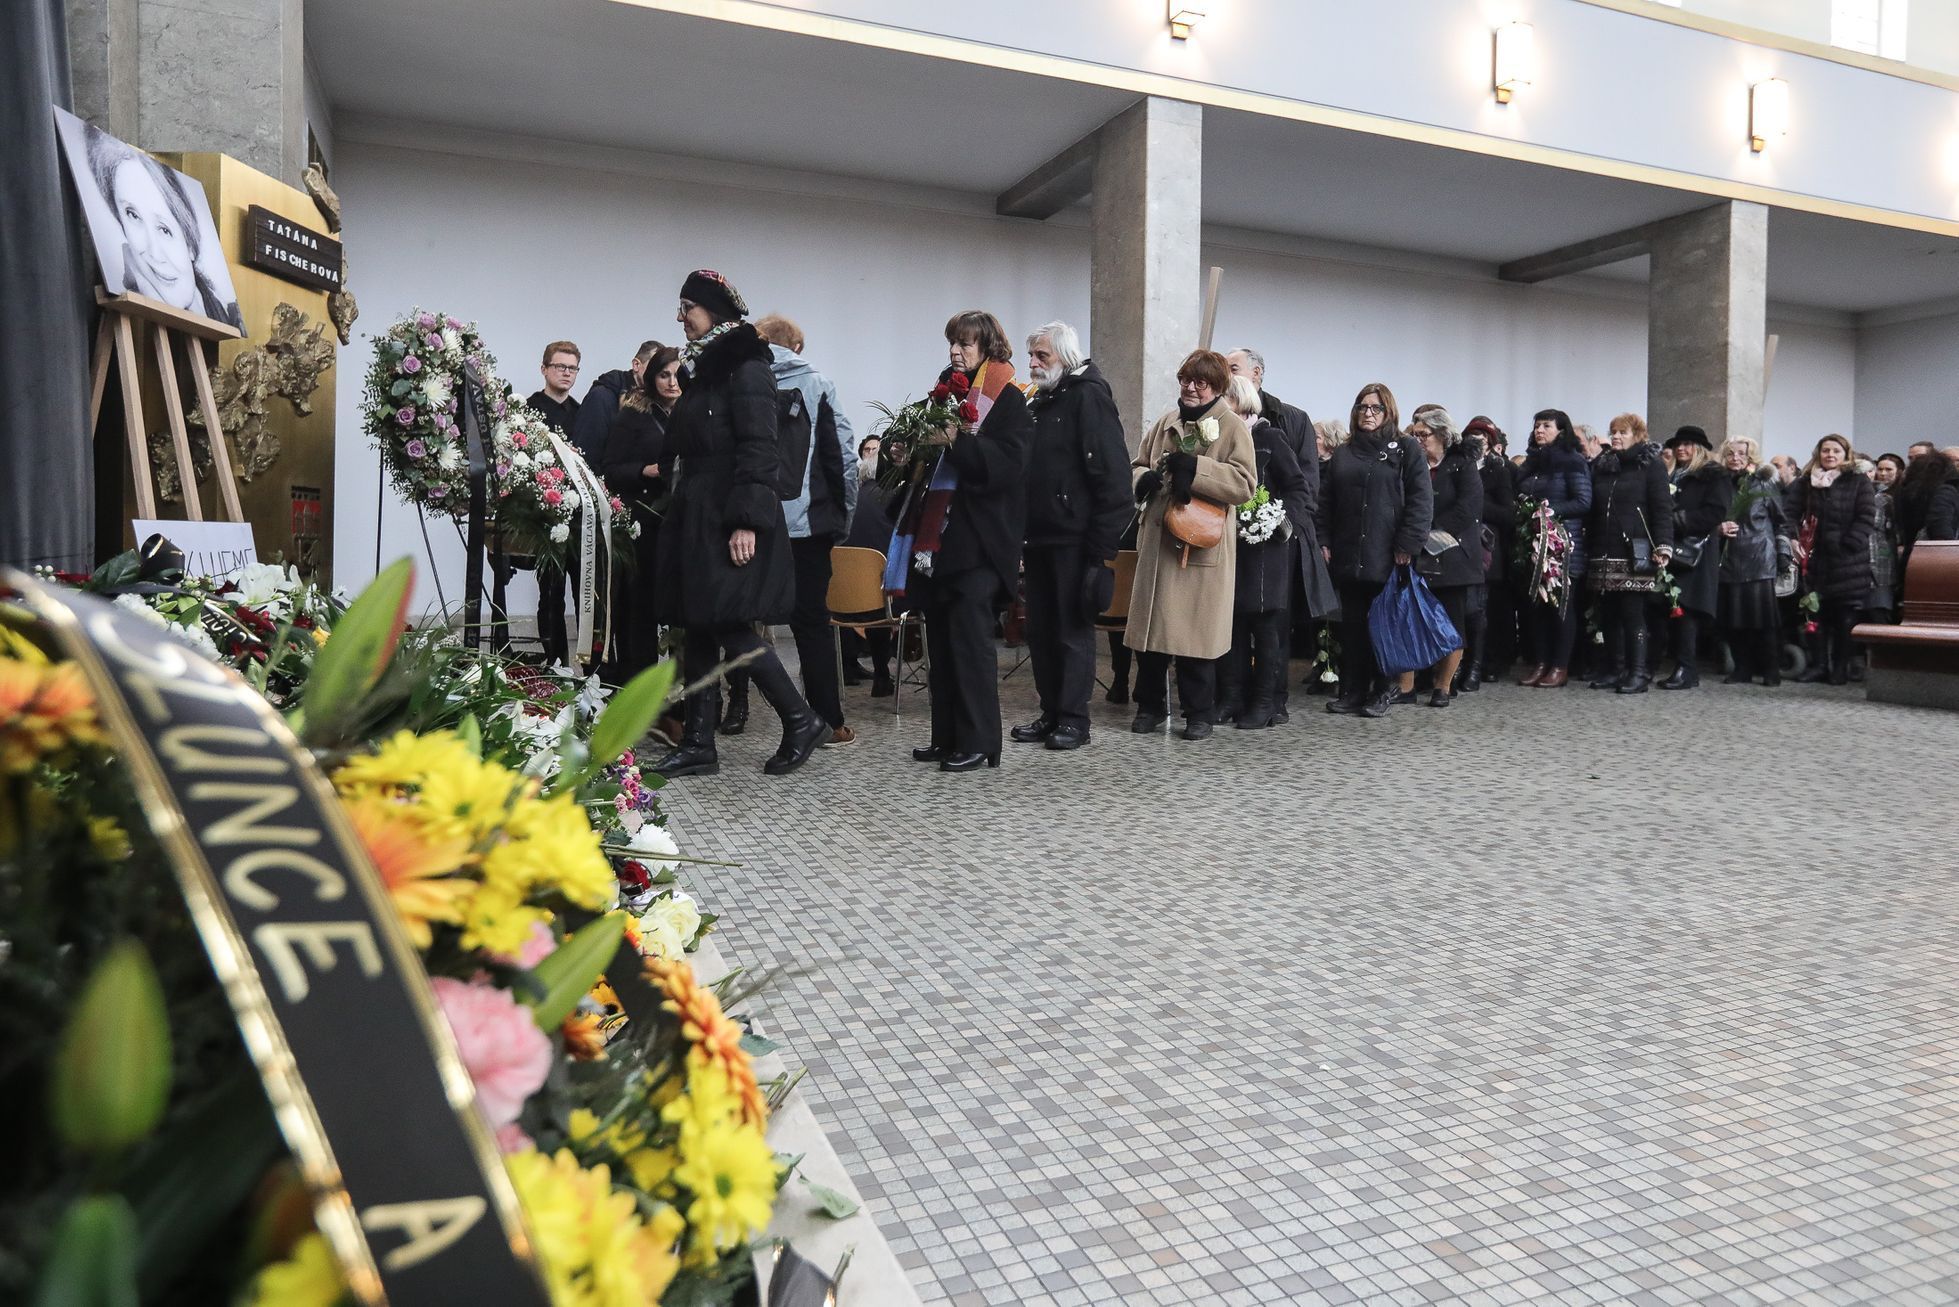 Pohřeb Táňa Fischerová, Krematorium Strašnice